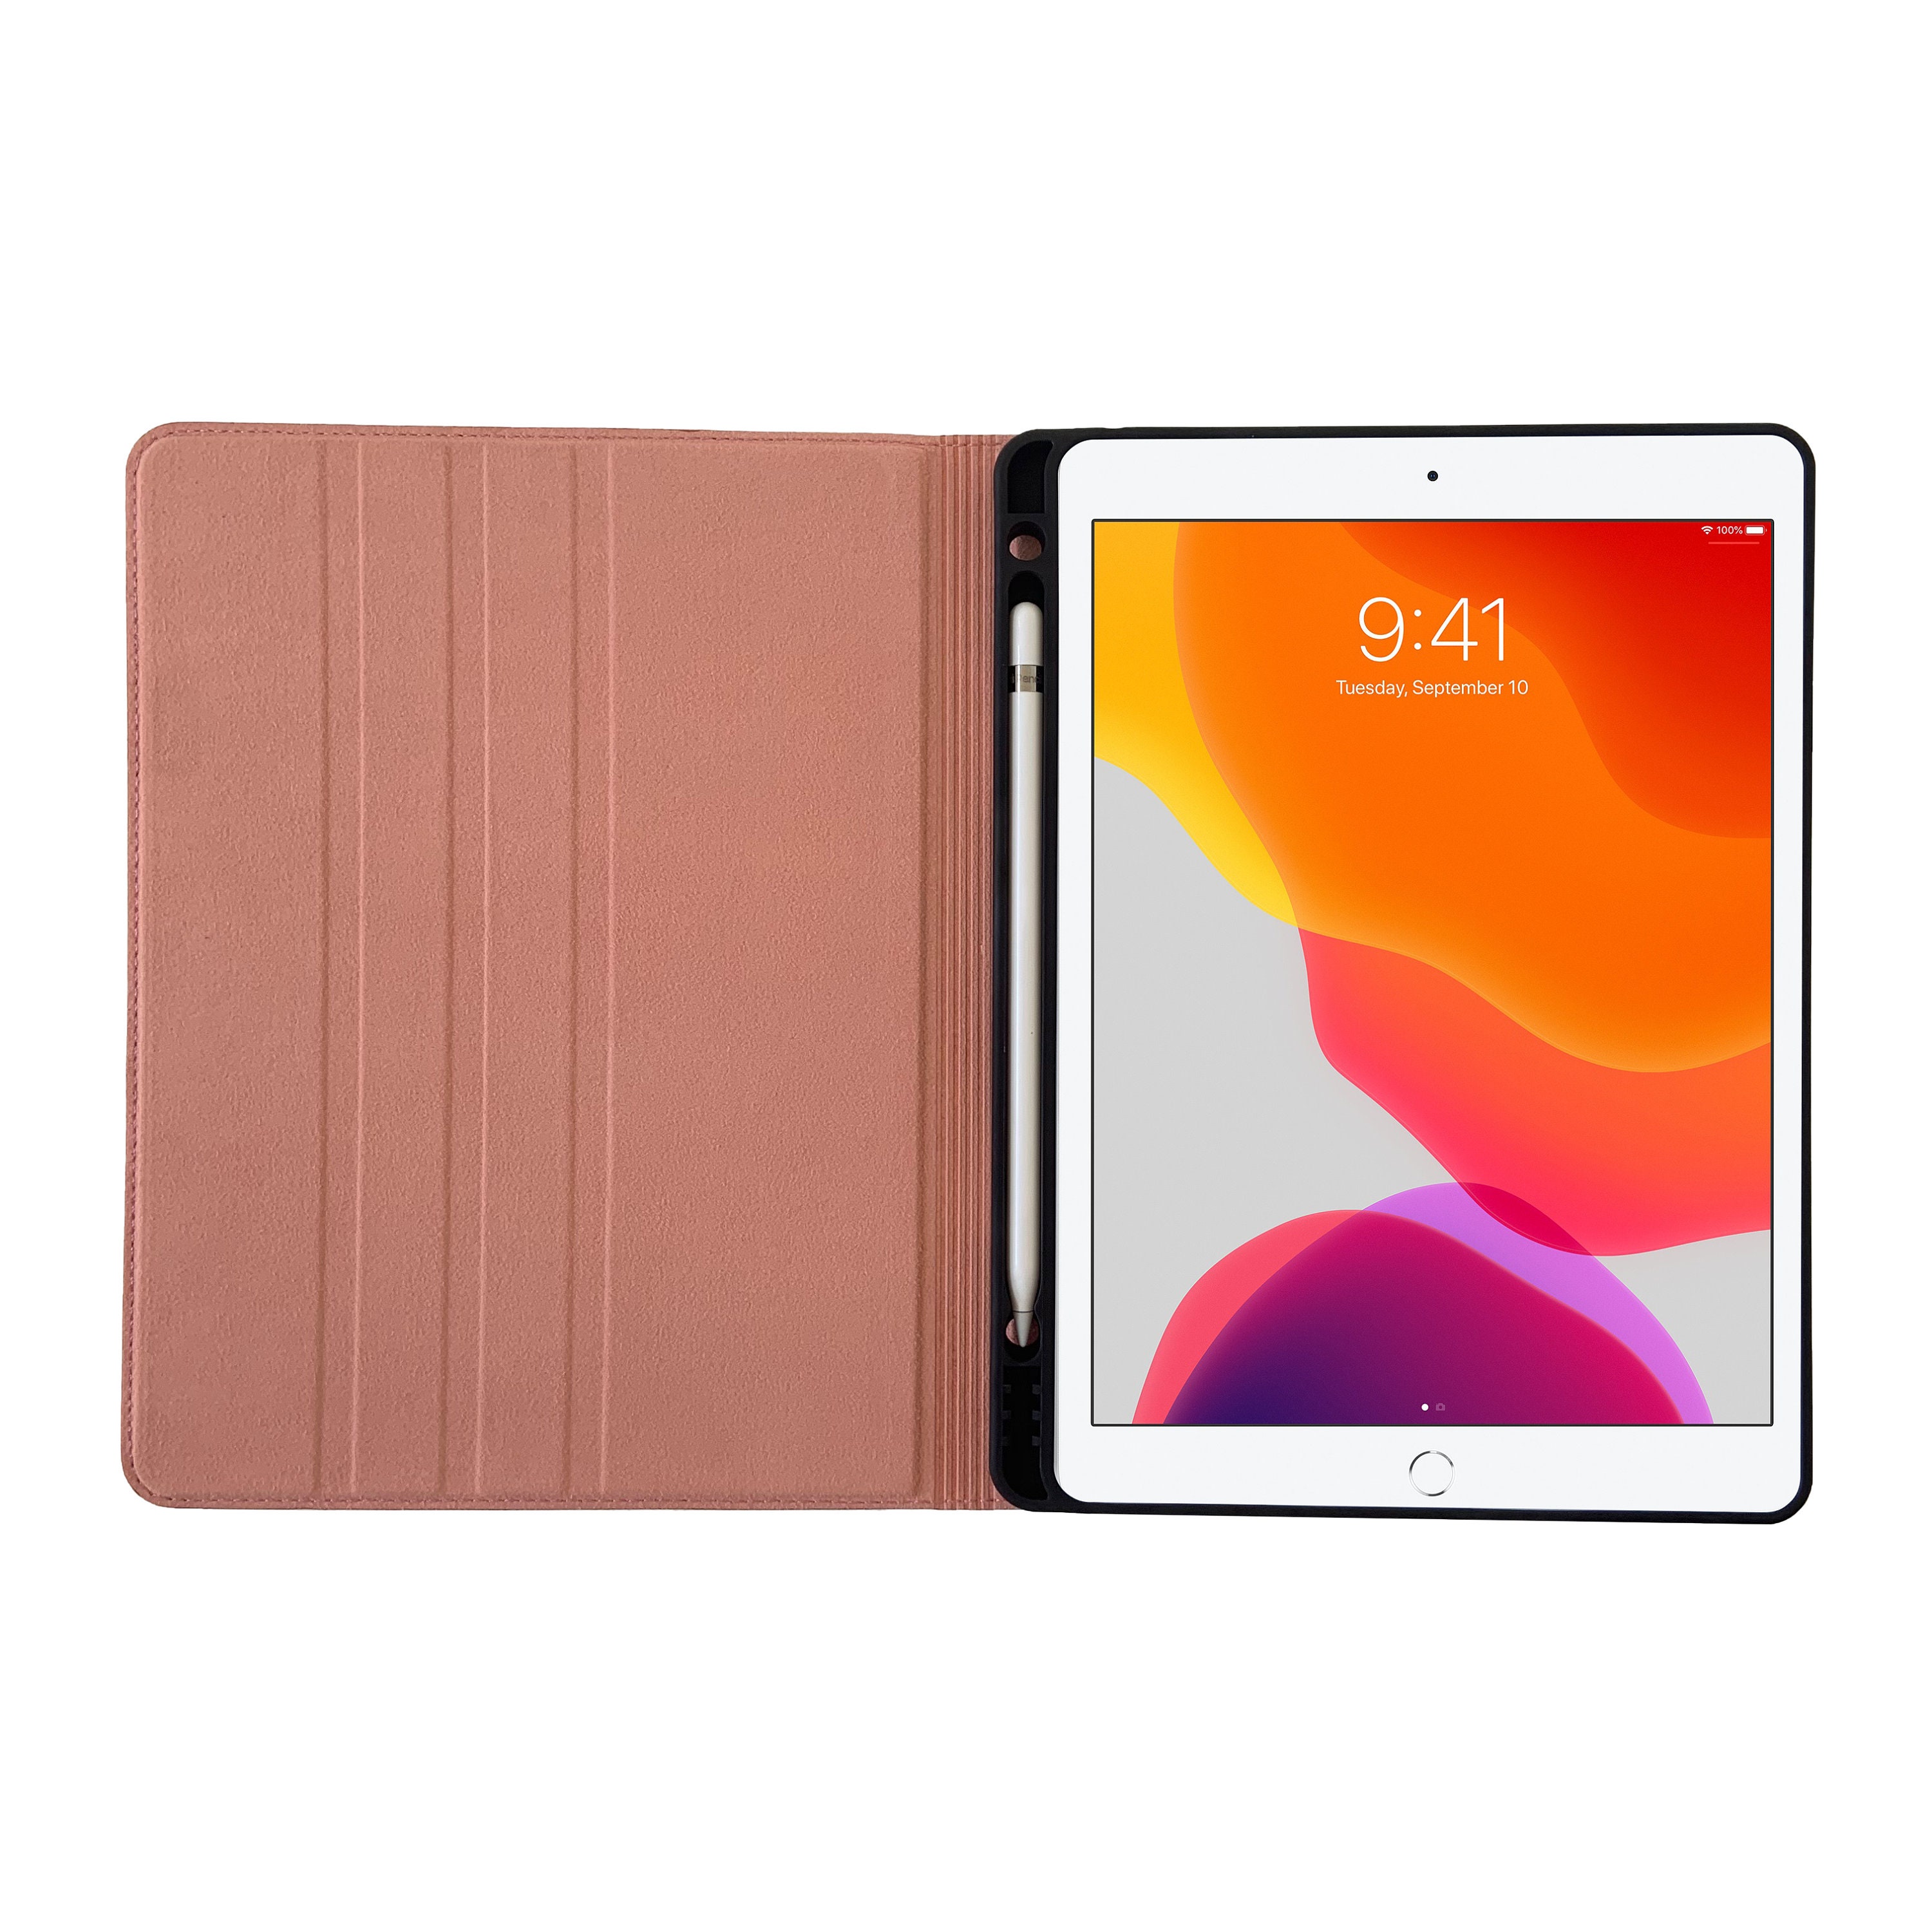 Étui iPad 9.7 6ème et 5ème Génération Avec Porte Crayon 2018/17 Rose Gold  Genuine Cowhide Leather Folio Case Sleep-Wake -  France